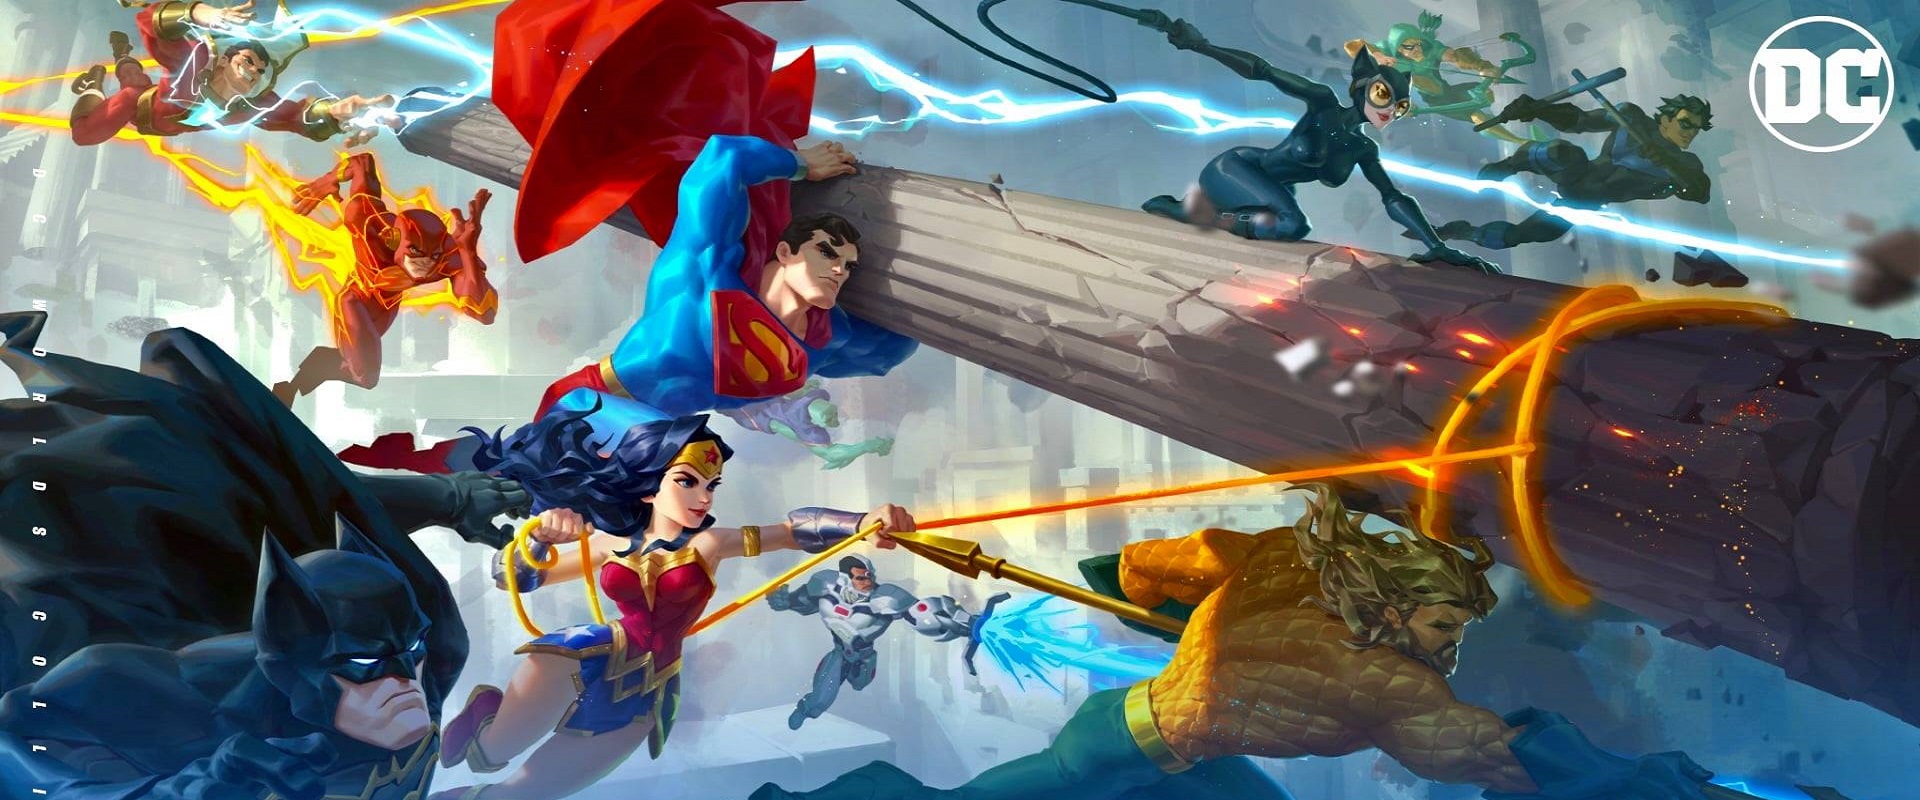 DC Worlds Collide – Game Mobile thể loại thẻ tướng mới nhất, nhập vai vào các siêu anh hùng để tham gia các trận chiến giải cứu thế giới.